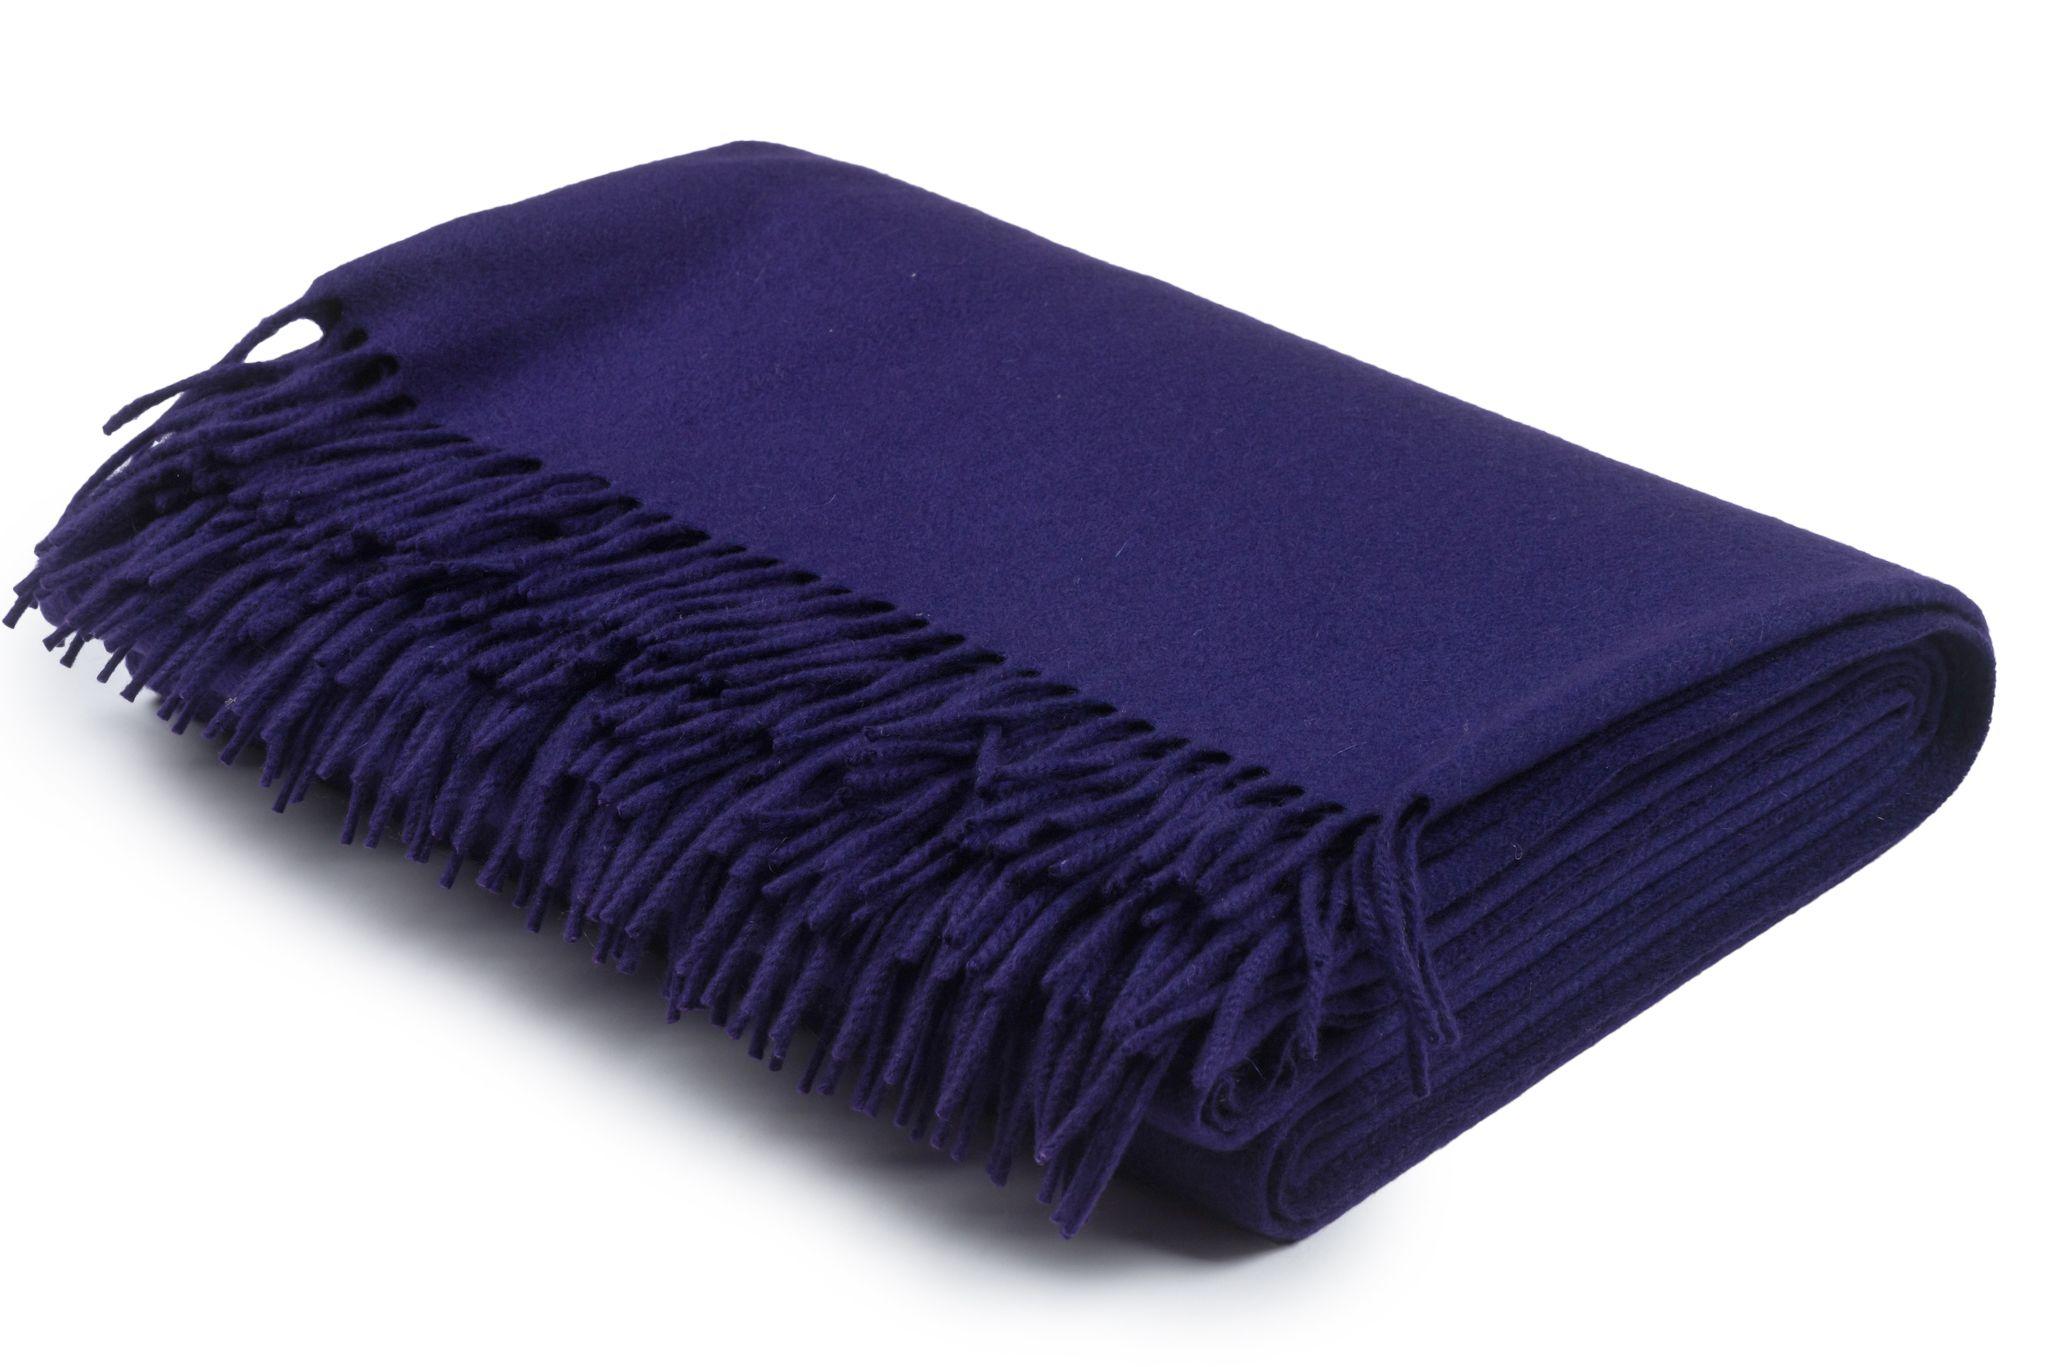 Couverture en cachemire violet Hermès avec franges et logo en relief. 100 % cachemire, qualité supérieure.
Livré sans boîte.